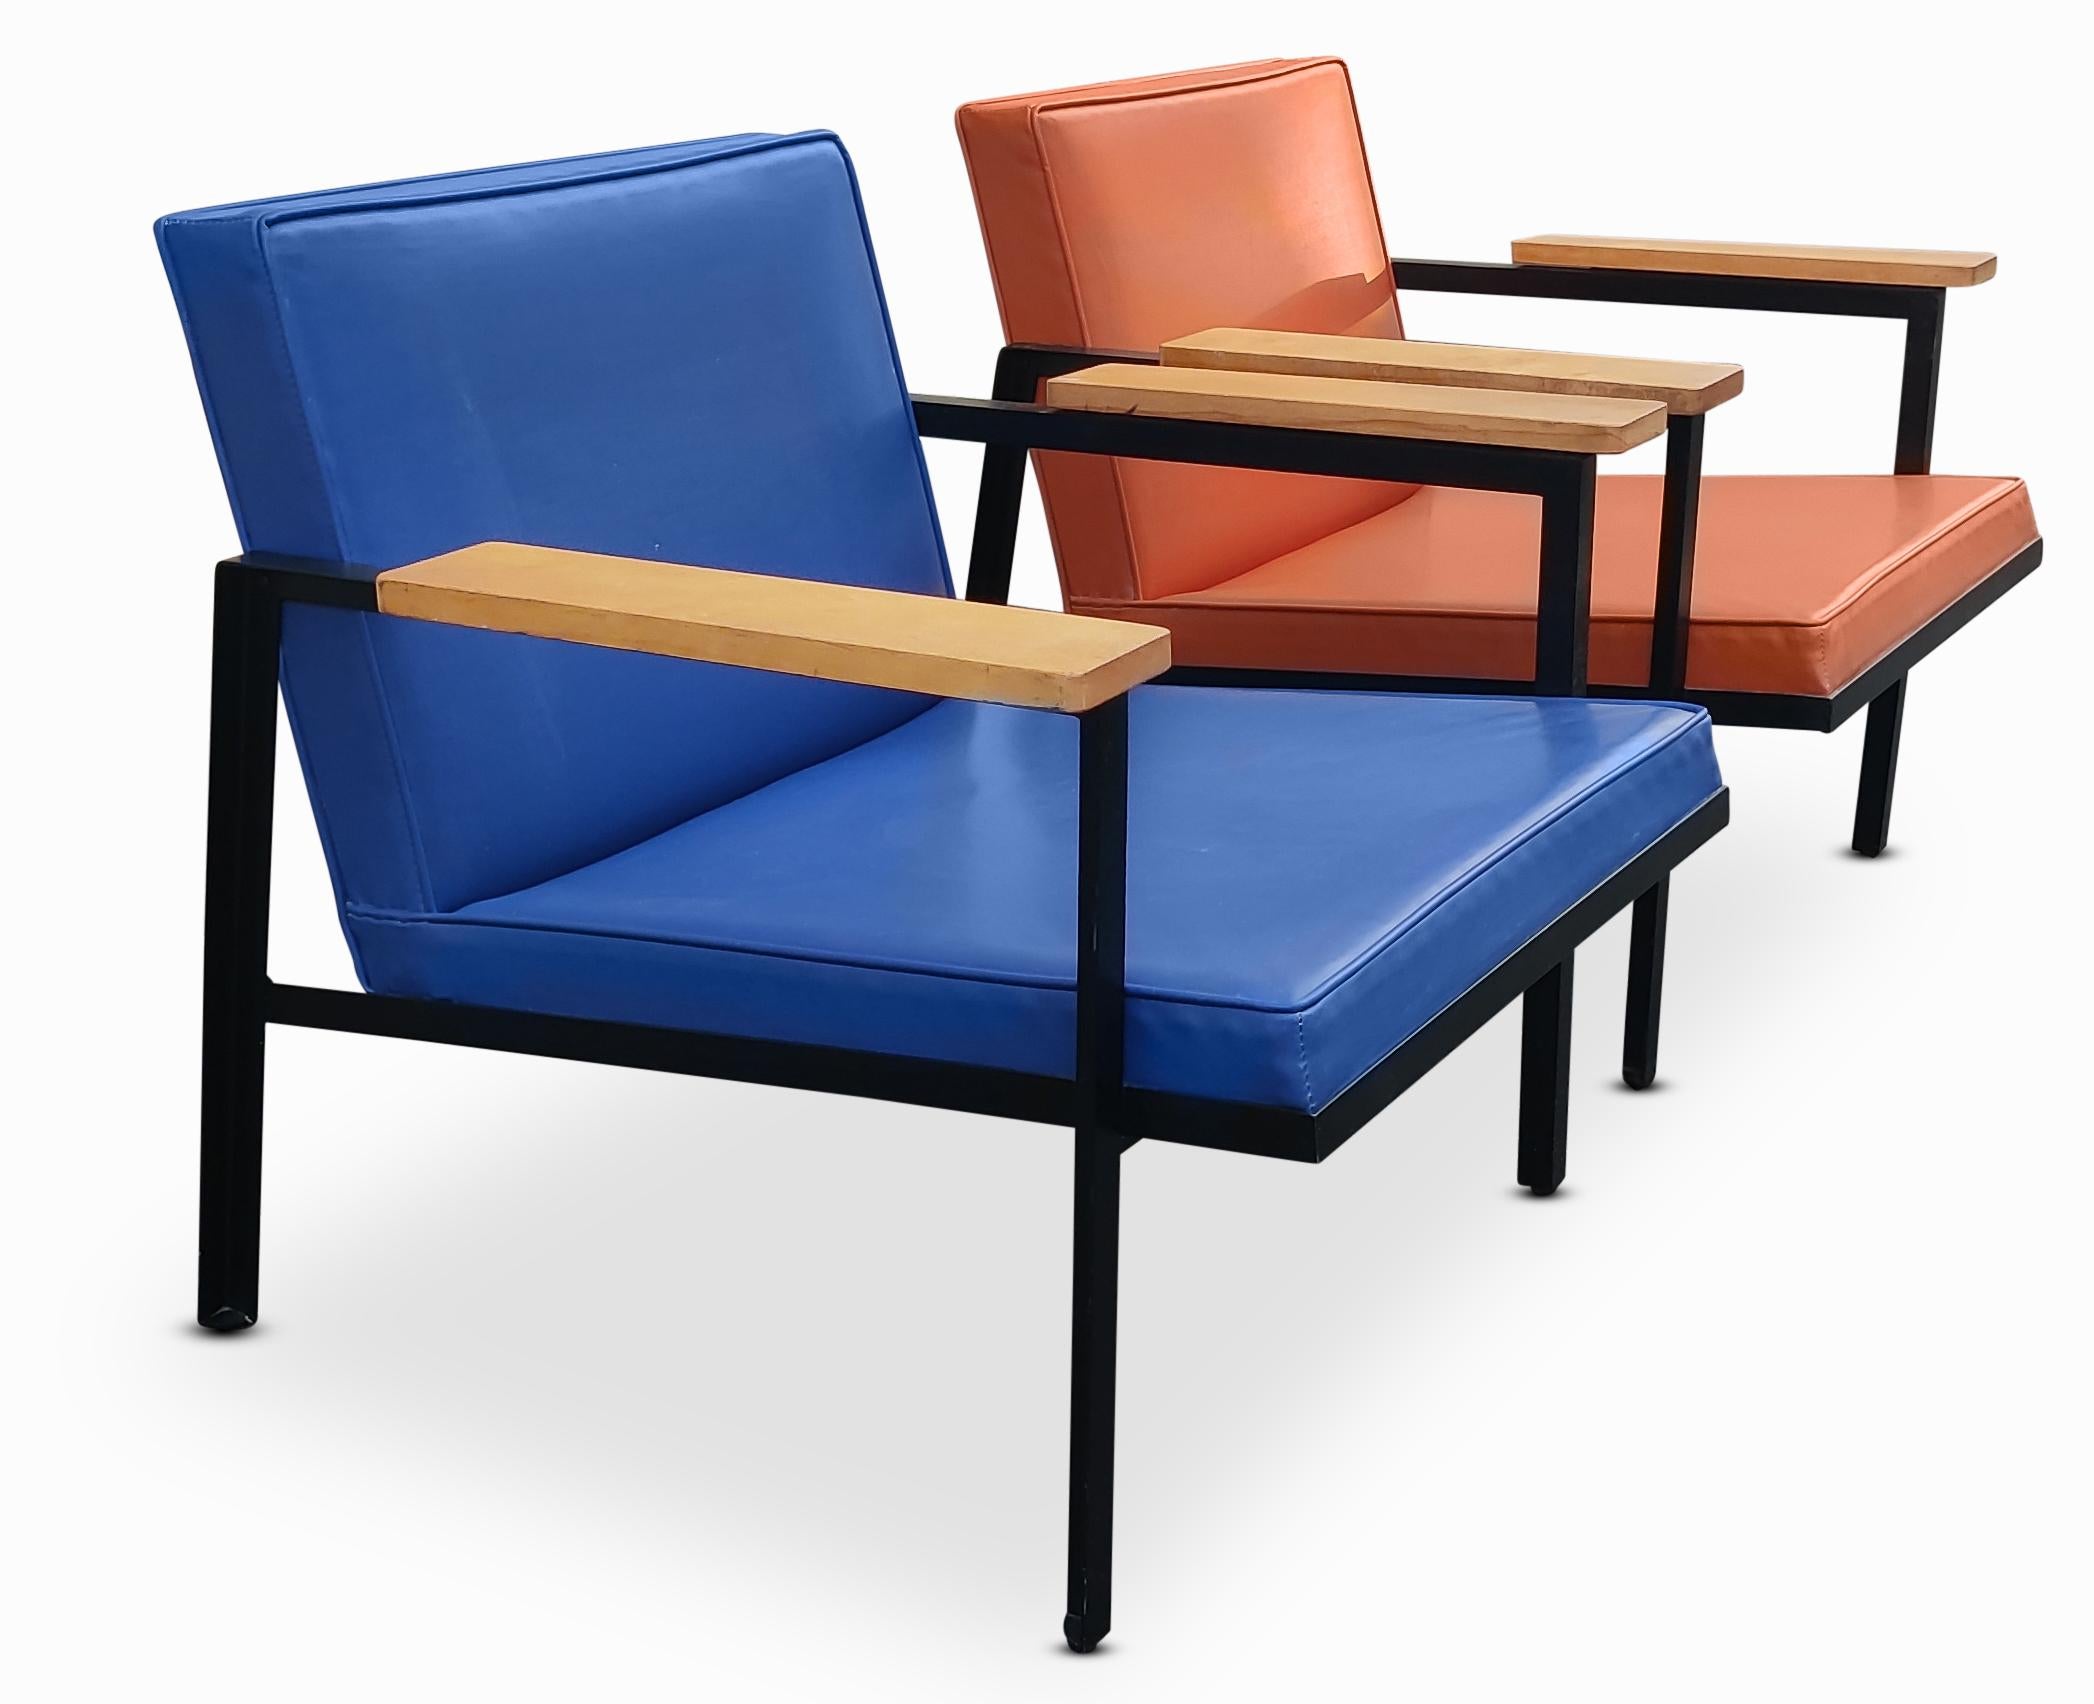 Super rare ! George Nelson pour les chaises à armature en acier de Herman Miller, modèle 5080 Easy Lounge Chairs. Cadres peints d'origine avec bras en bois massif. Garniture d'origine en vinyle bleu et orange. Le vinyle est souple et pliable, des